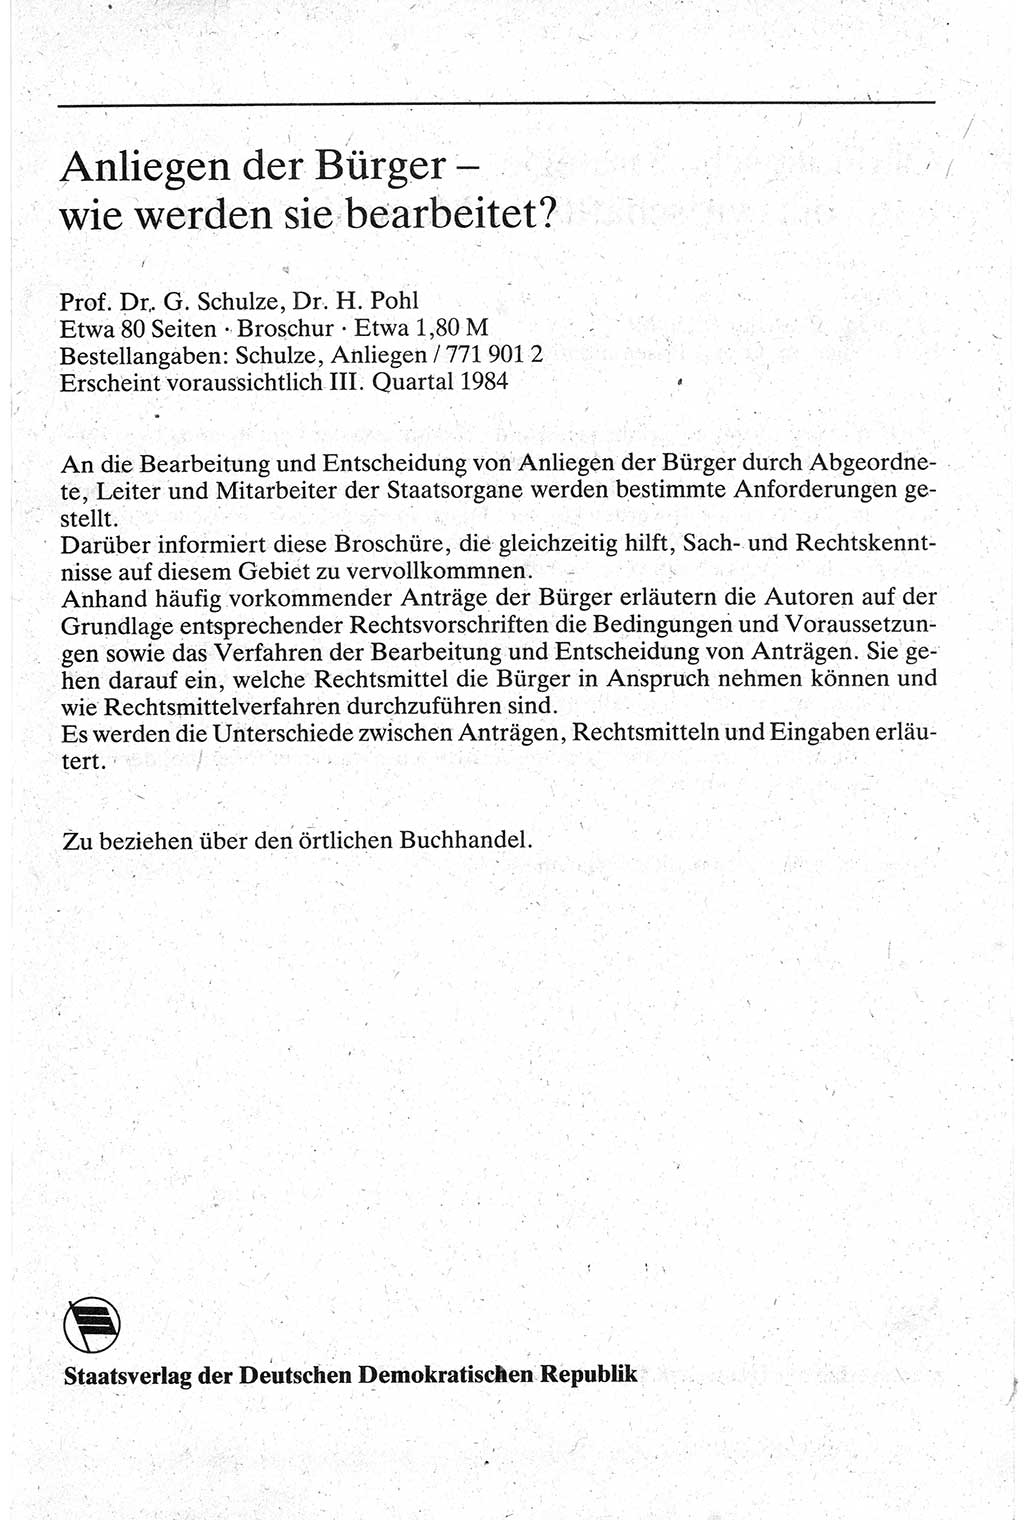 Handbuch für den Abgeordneten [Deutsche Demokratische Republik (DDR)] 1984, Seite 223 (Hb. Abg. DDR 1984, S. 223)